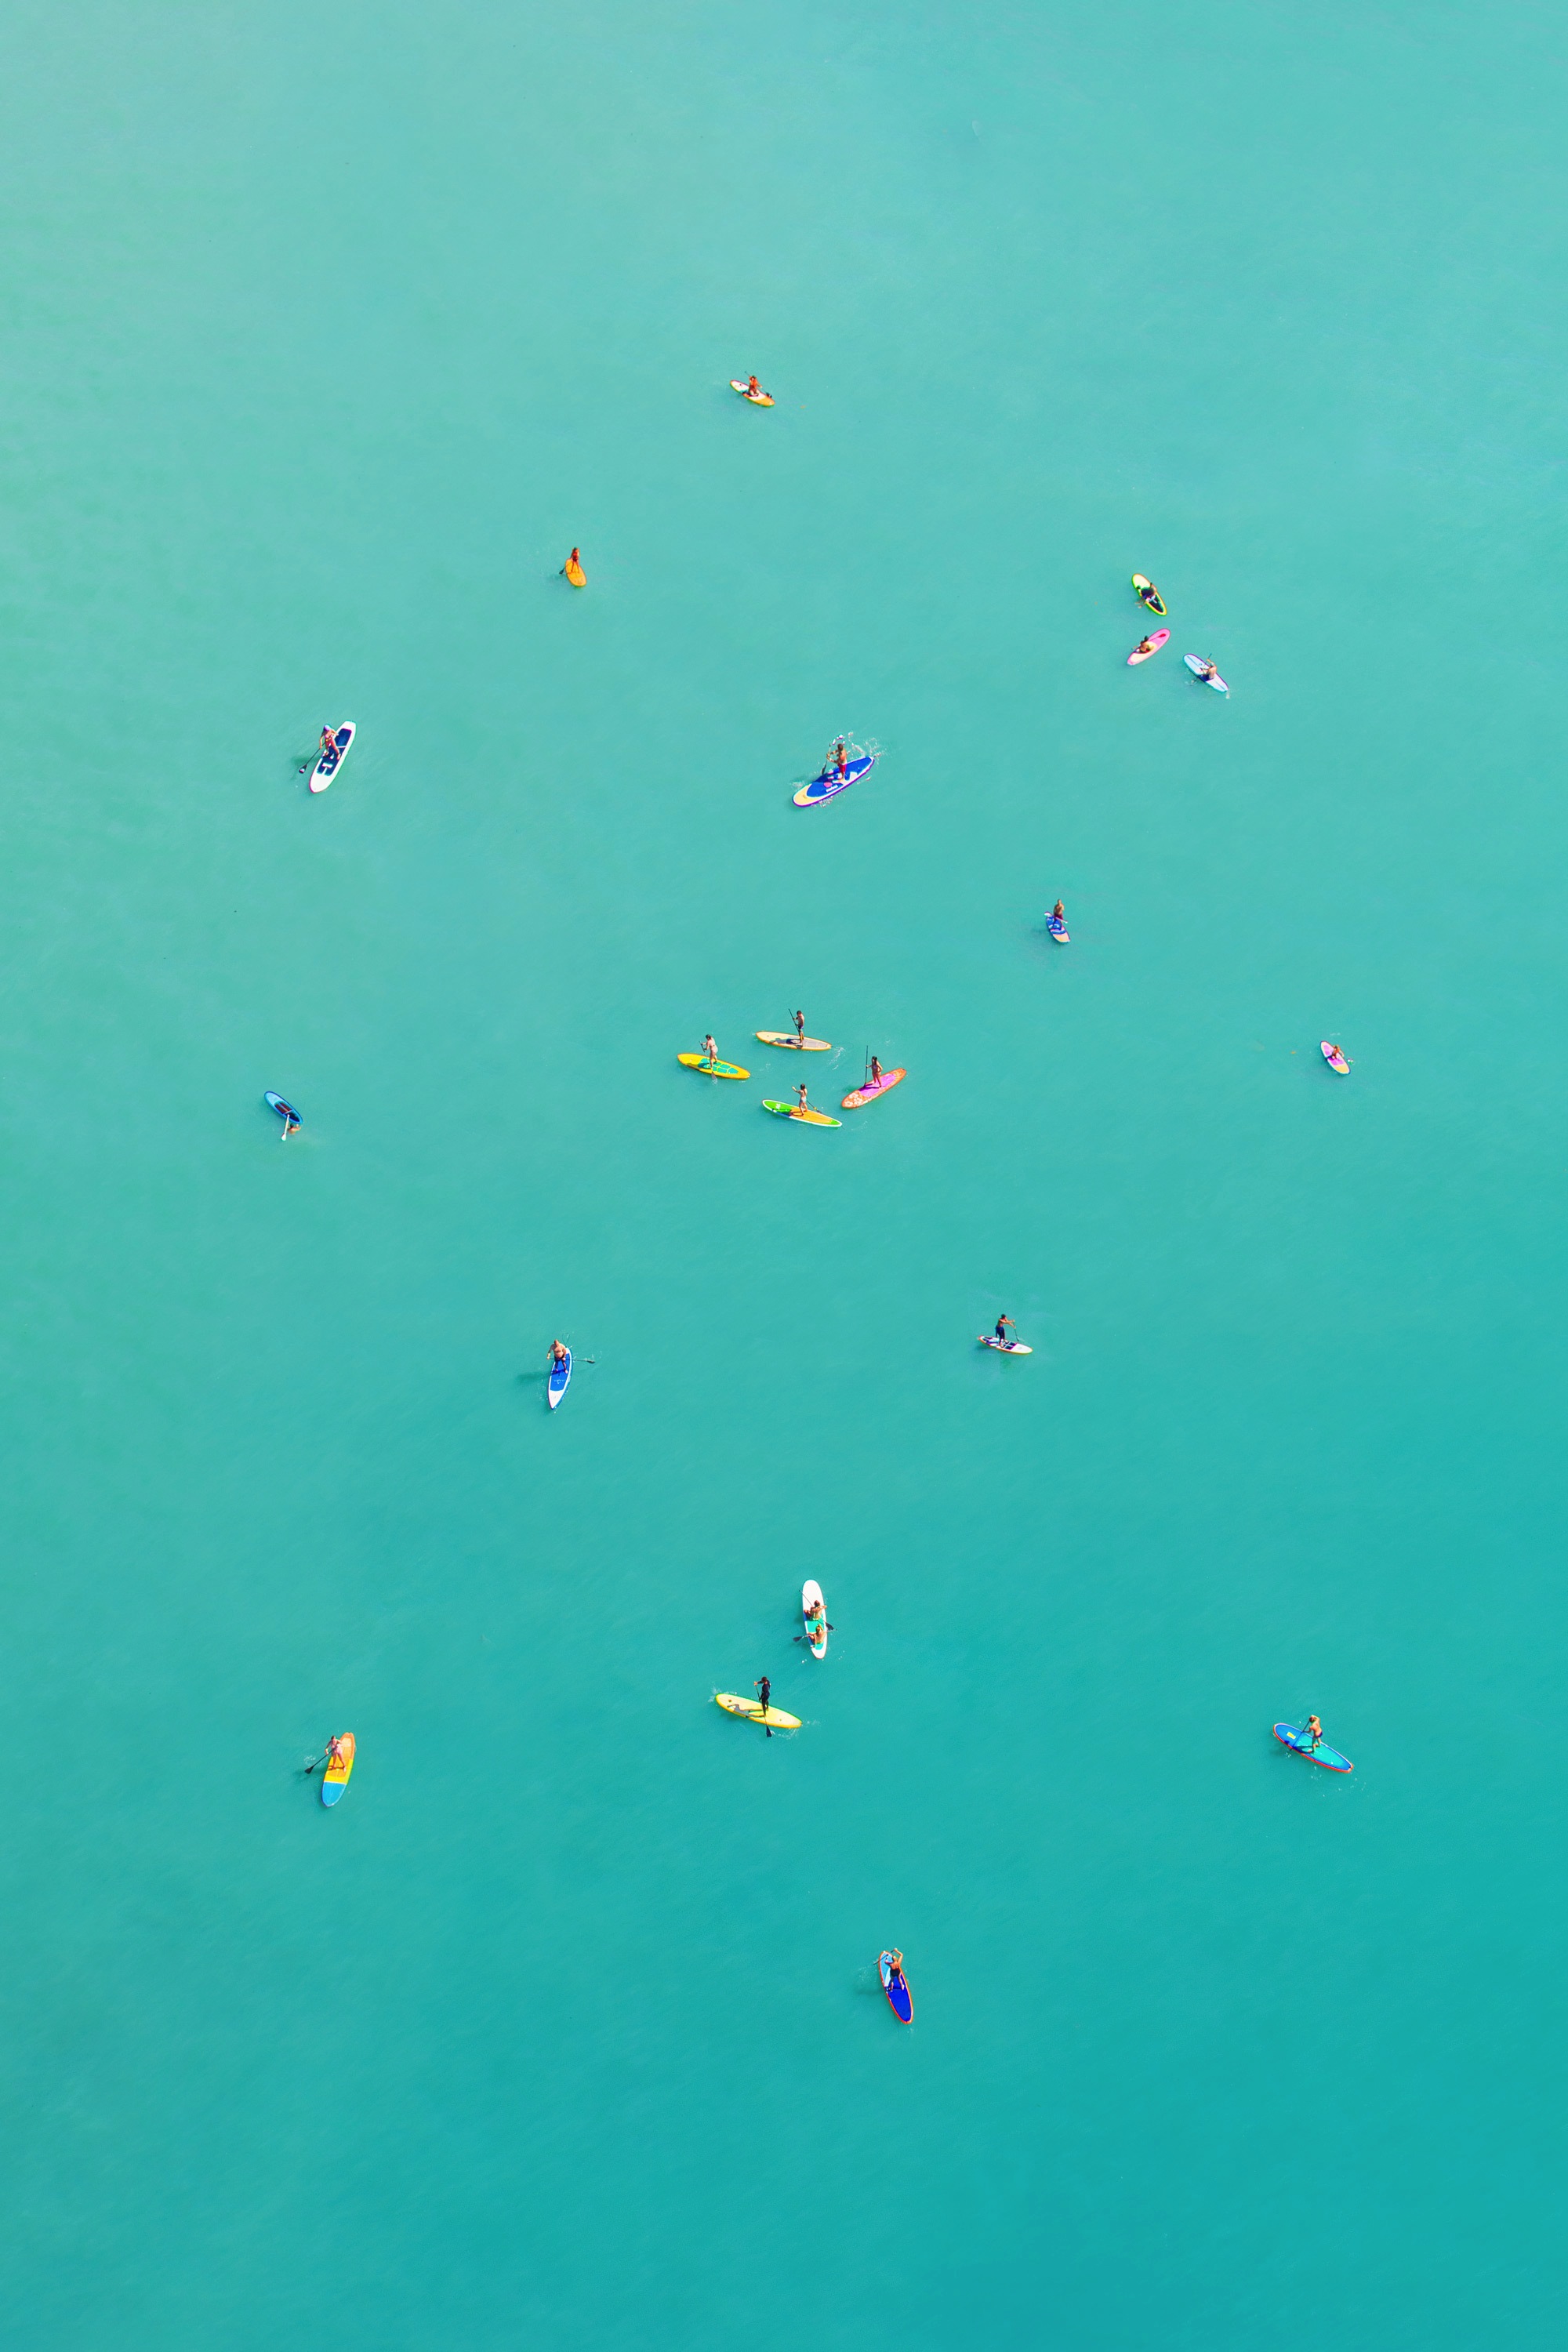 Gray Malin's New Rio Beach Aerials - Rio Paddle Boarders Vertical